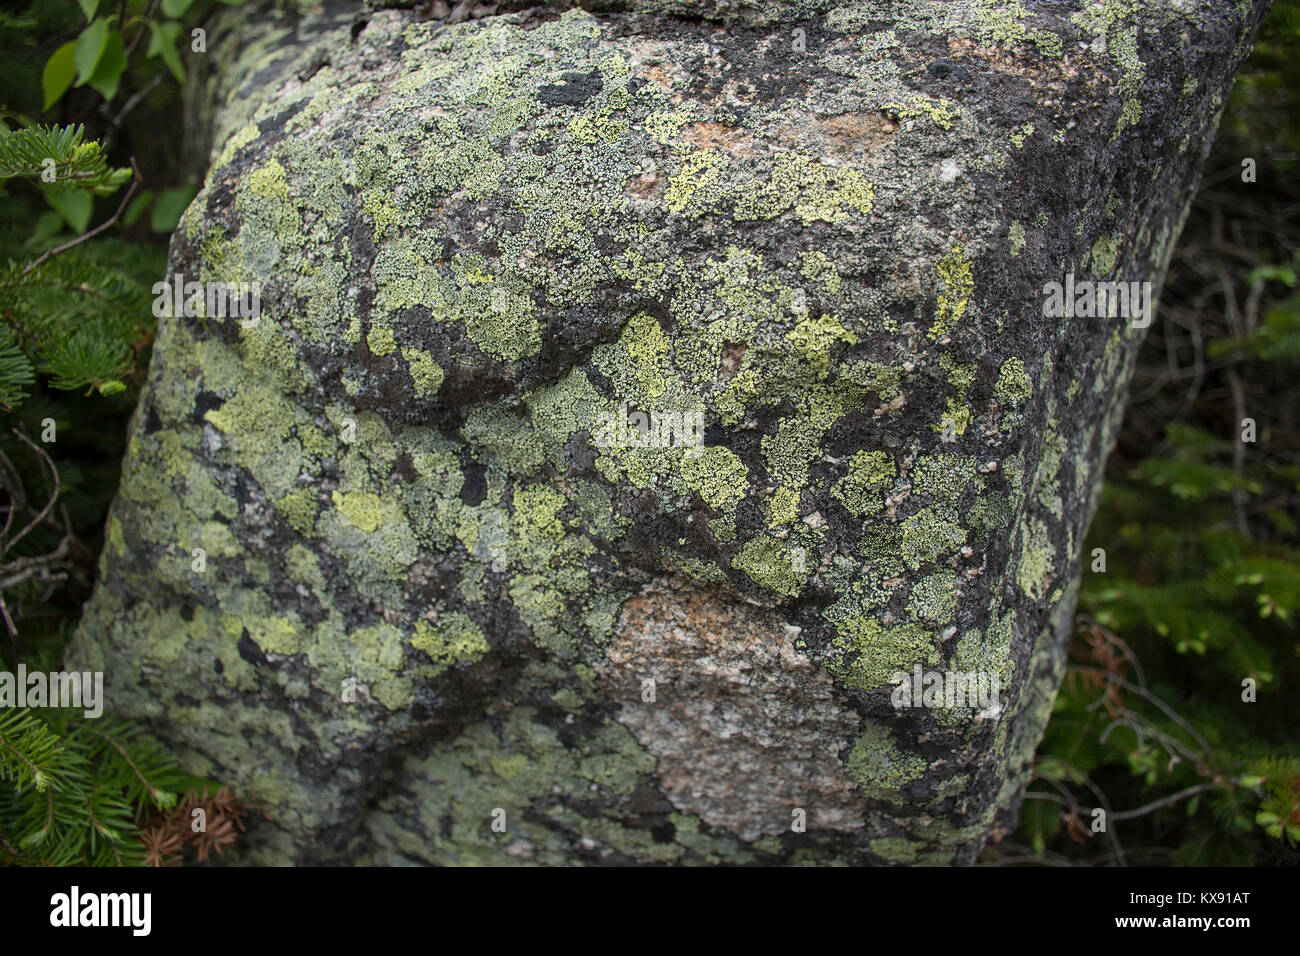 Lichens colorés sur la surface d'un rocher. Prises dans la région de Franconia Notch State Park, New Hampshire, USA Banque D'Images